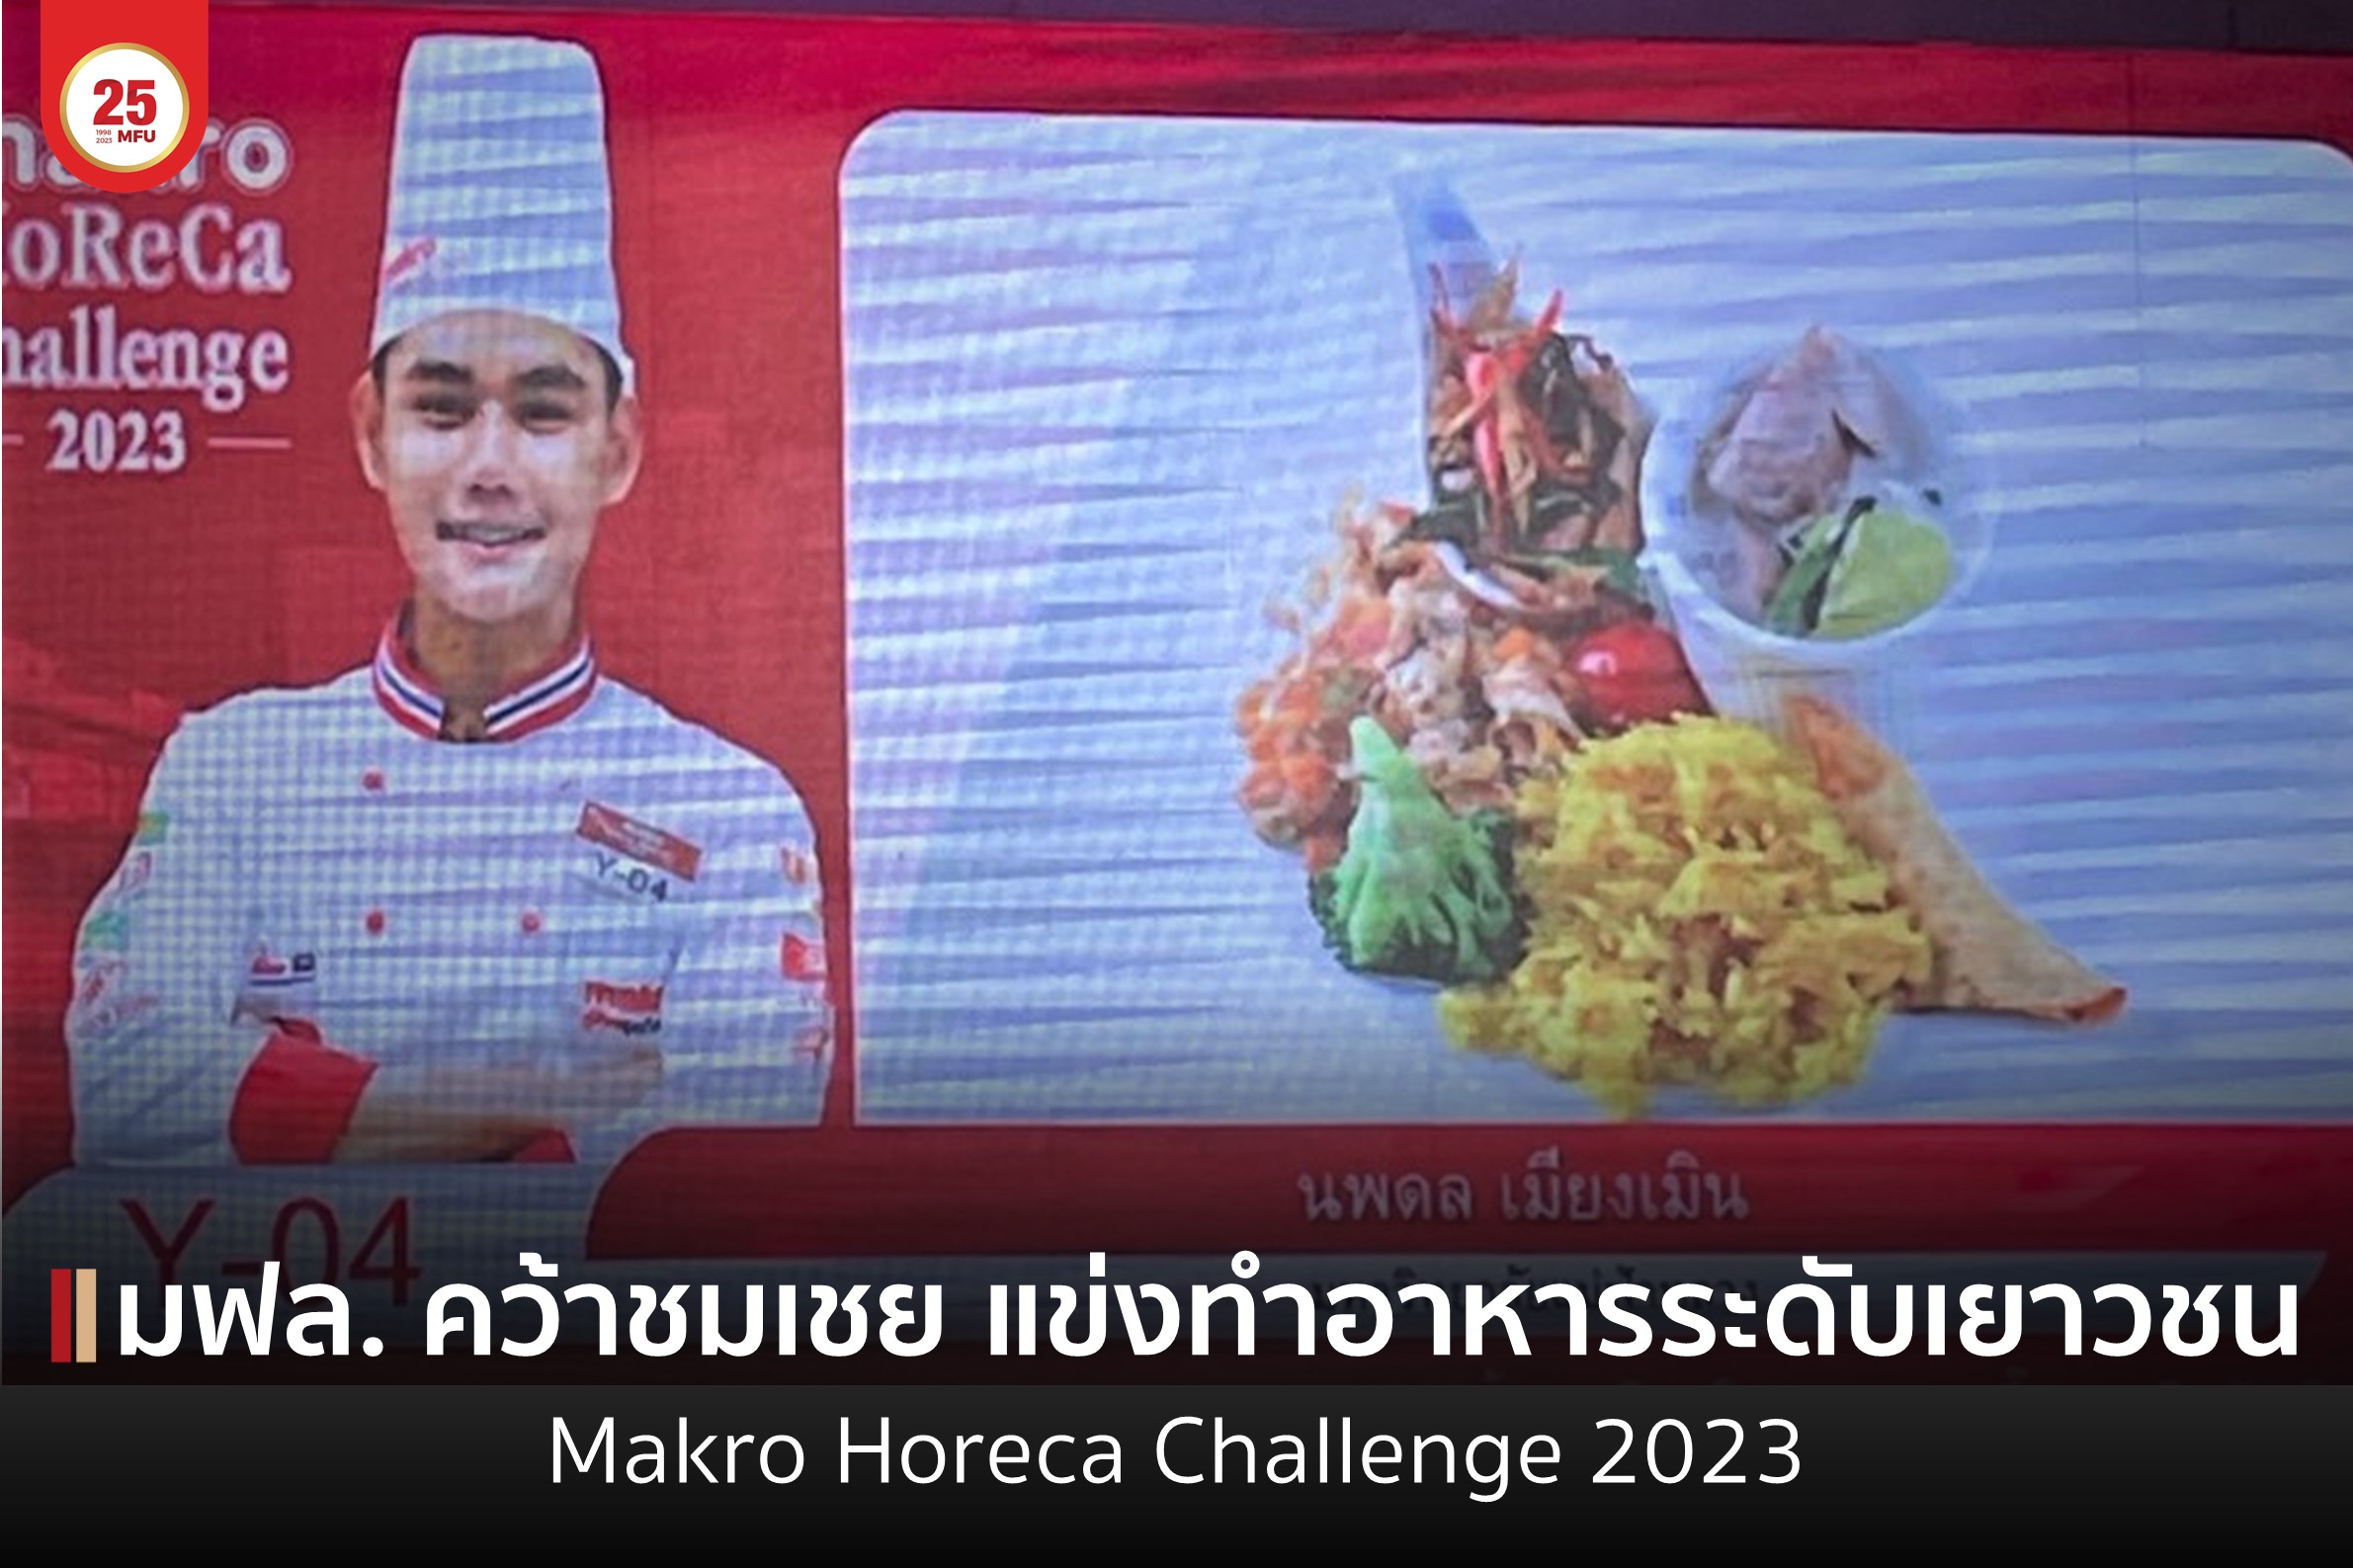 ขอแสดงความยินดีกับนักศึกษา สนว.การจัดการ ที่ได้รับรางวัลจากการแข่งขันทำอาหารระดับภูมิภาค: ภาคเหนือ ภายในงาน Makro Horeca Challenge 2023 : Main Course จากวัตถุดิบปริศนา ระดับเยาวชน